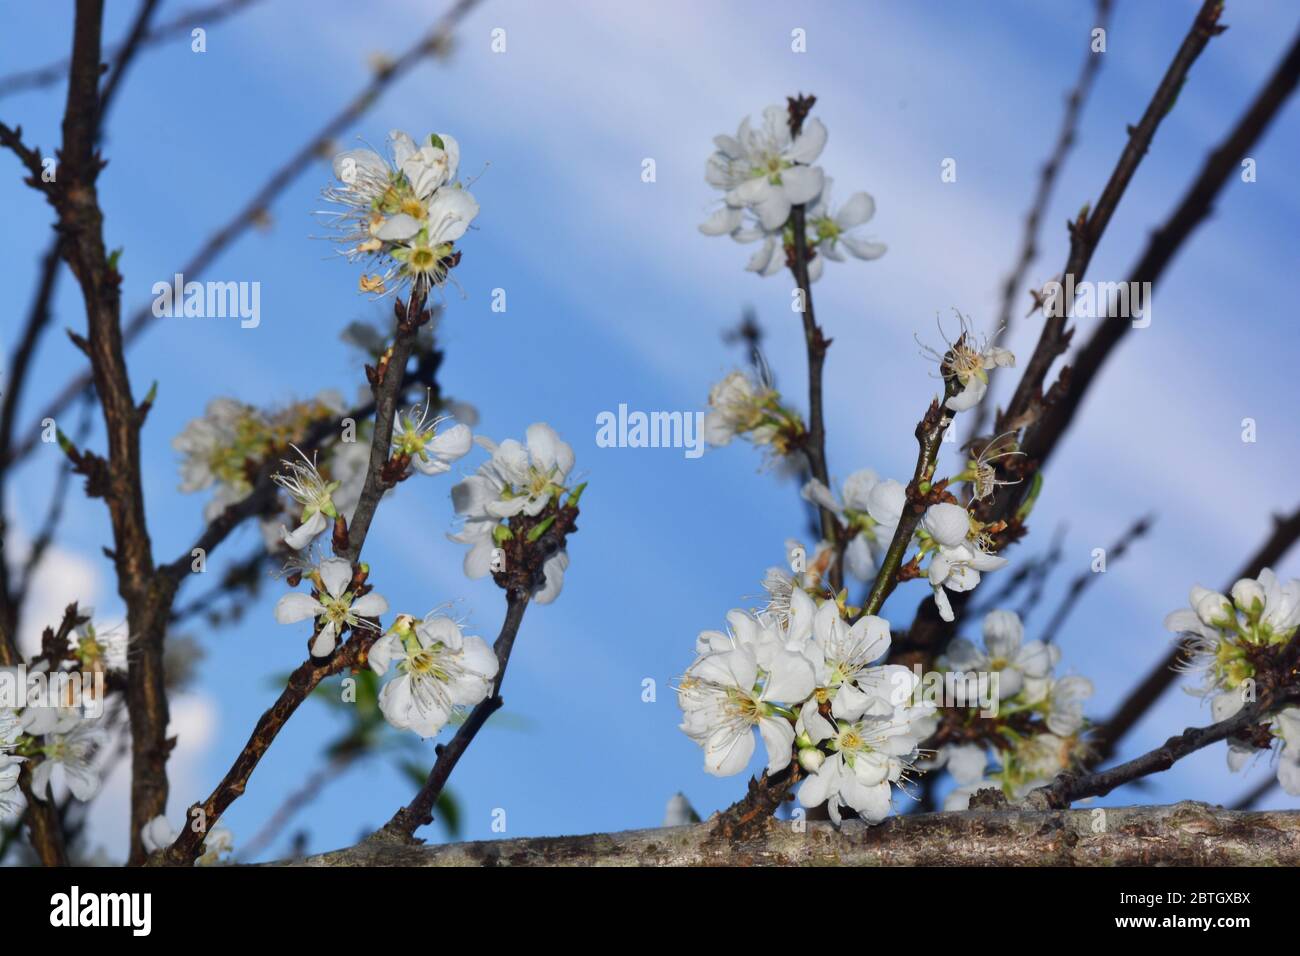 Blühende Weiße chinesische Pflaumenblume oder japanische Aprikose, koreanische grüne Pflaume, Ostasien, wird normalerweise Pflaumenblüte genannt Stockfoto